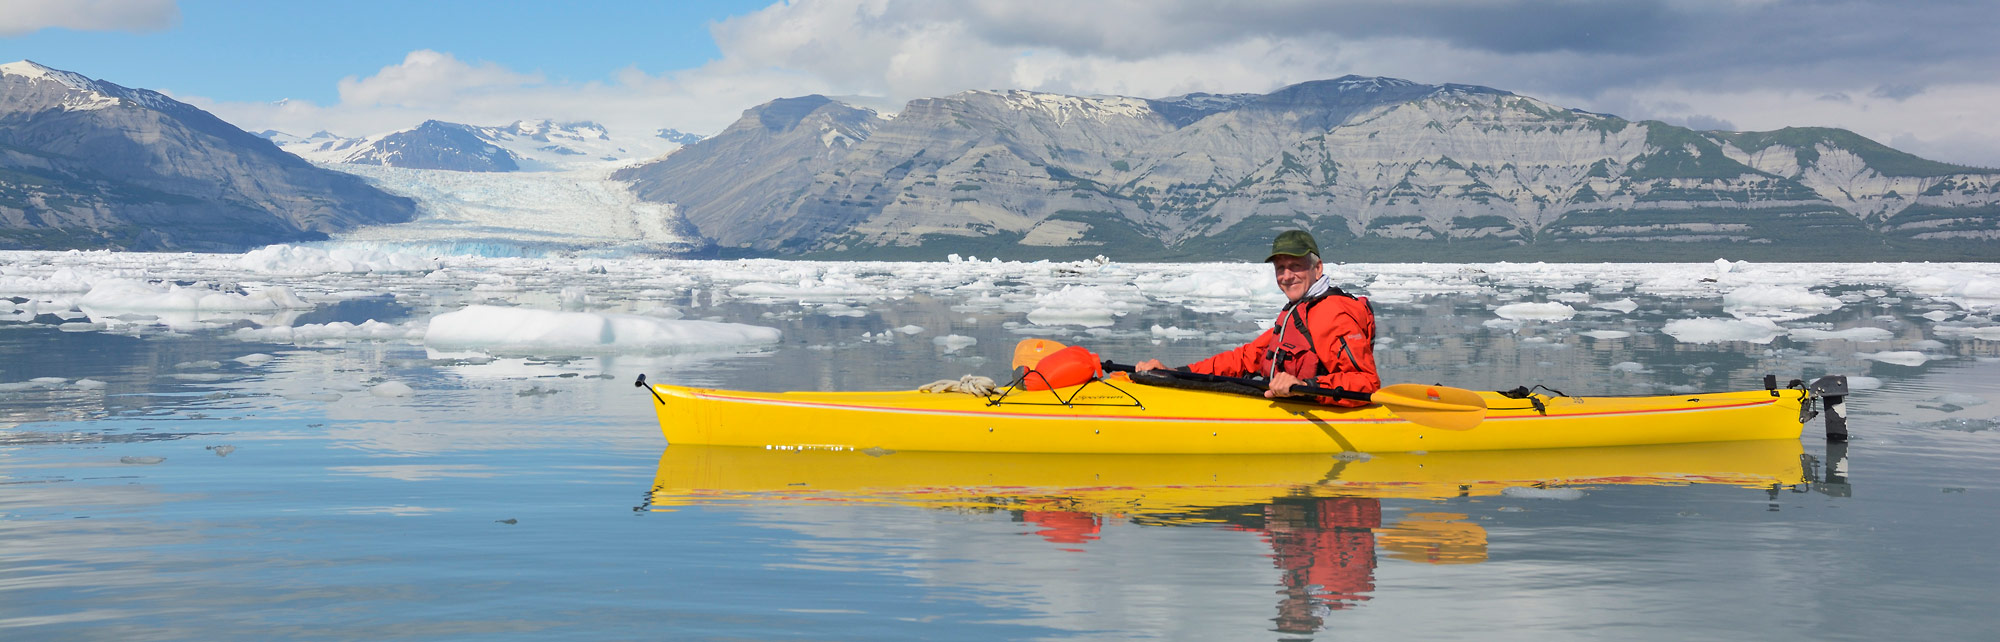 Sea kayaking trip Kayaking Icy Bay, Wrangell - St. Elias National Park, Alaska.